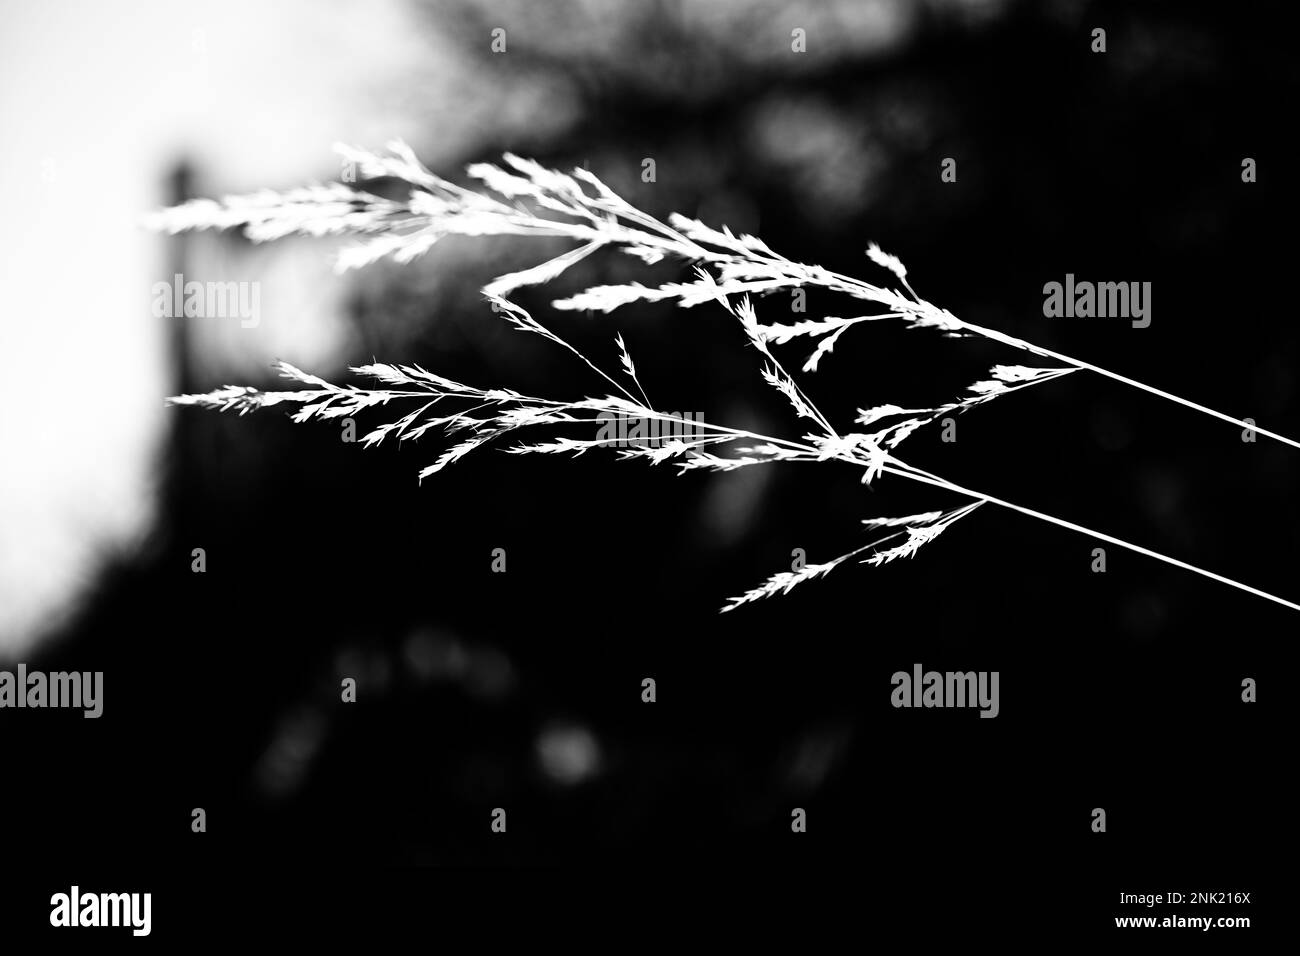 Une photo en niveaux de gris d'une herbe d'amour pleureuse sur un arrière-plan flou Banque D'Images